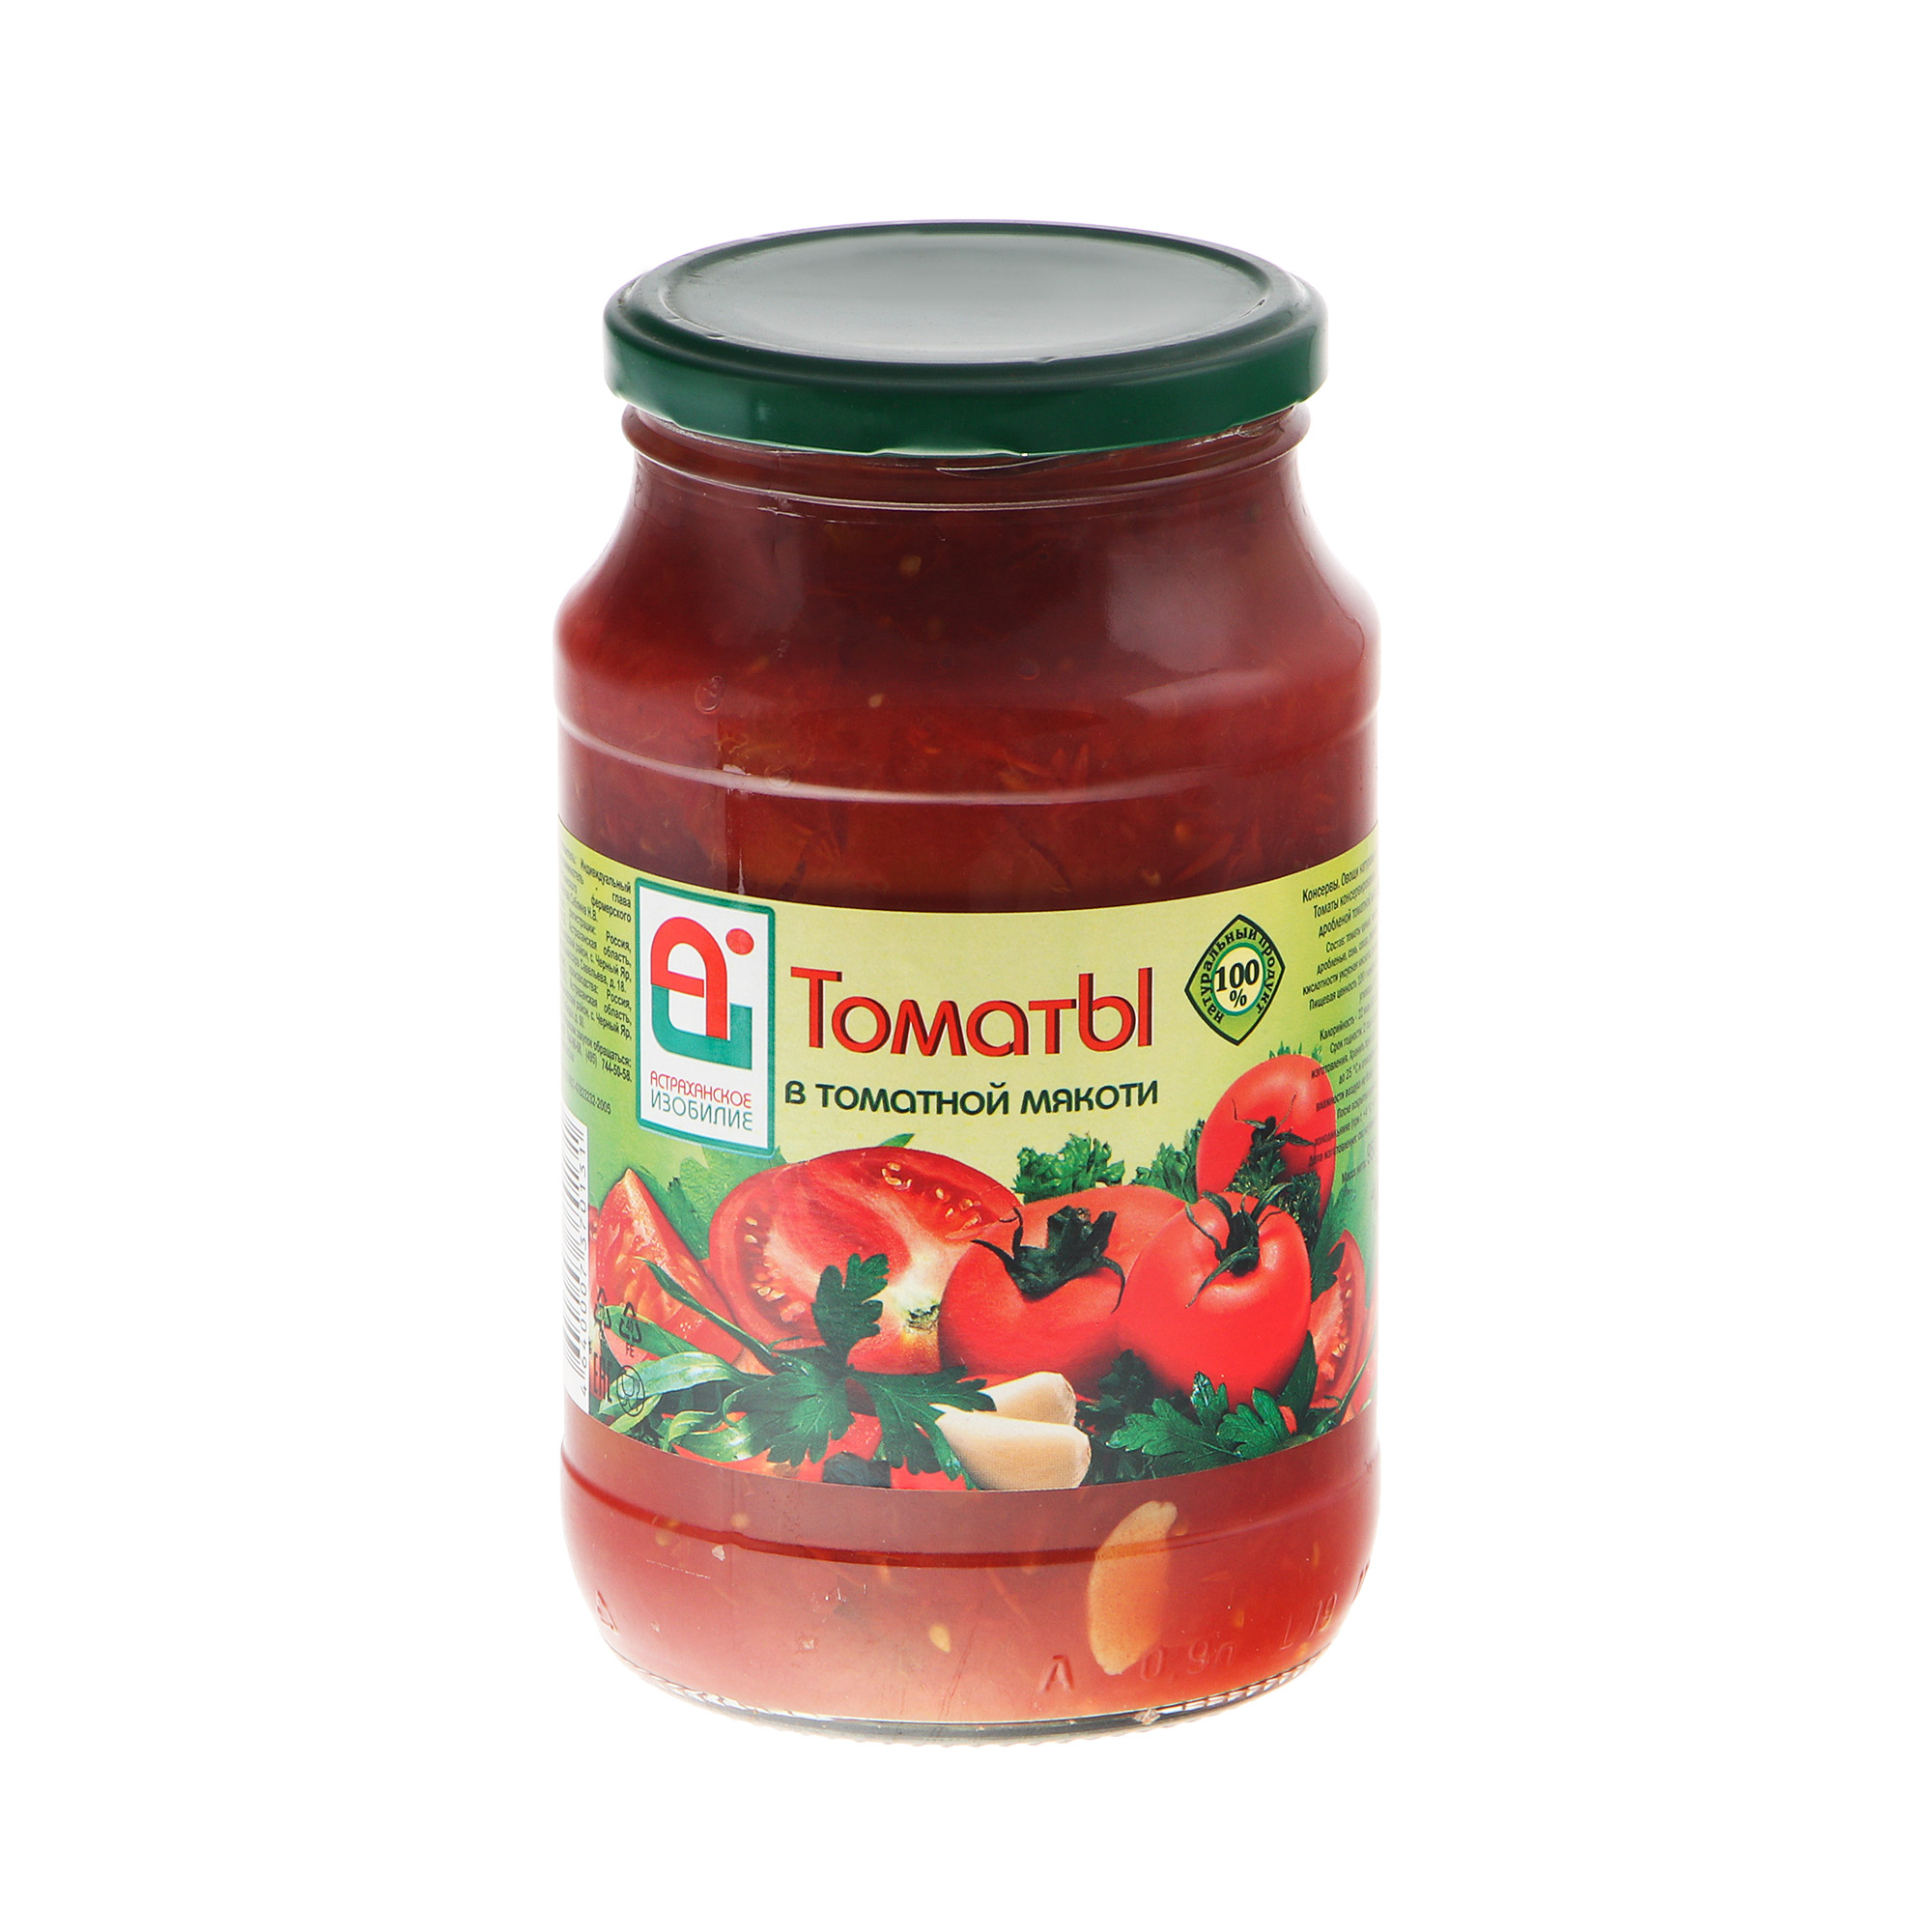 Томаты Астраханское Изобилие в мякоти 950 г томаты консервированные астраханское изобилие 1 л